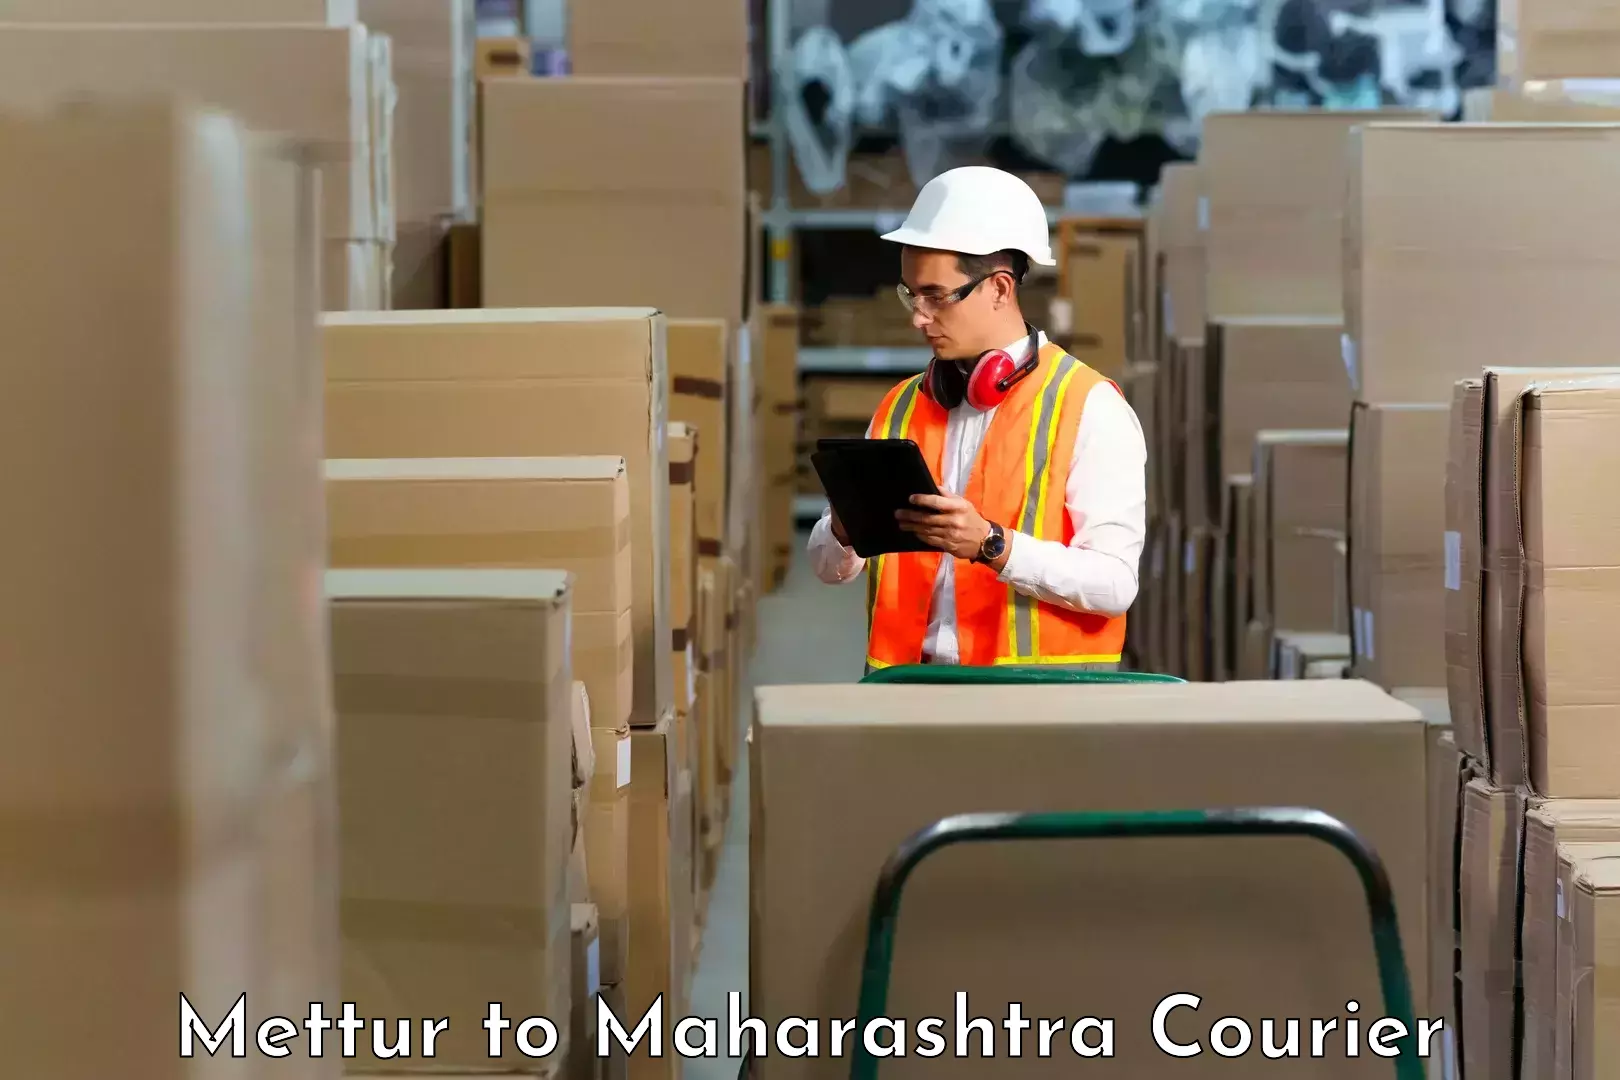 Customer-focused courier Mettur to Ahmedpur